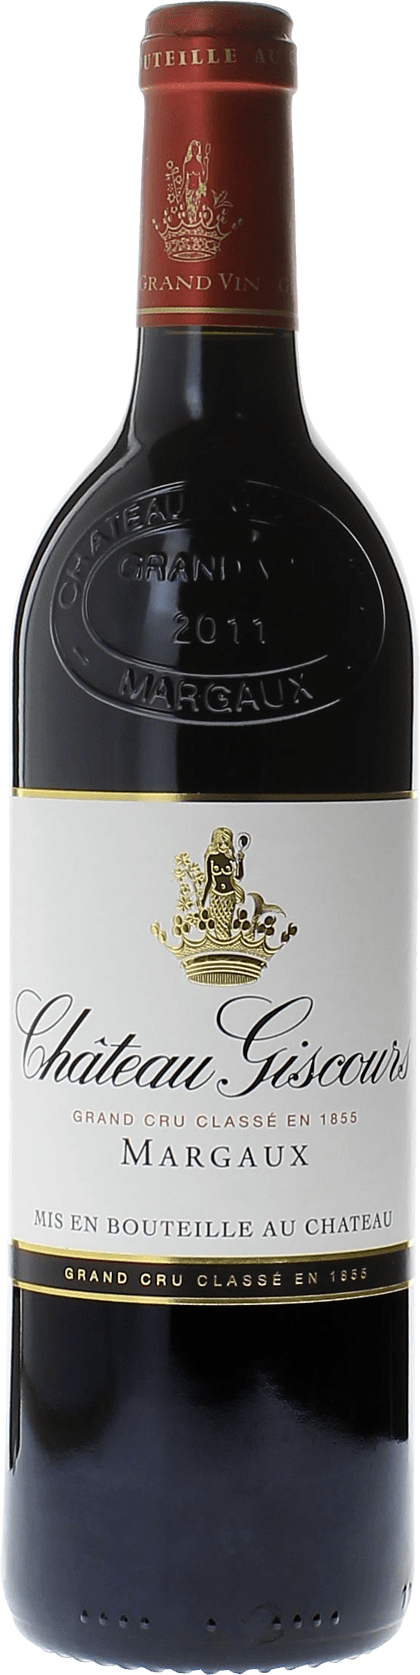 Giscours 2000 3me Grand cru class Margaux, Bordeaux rouge